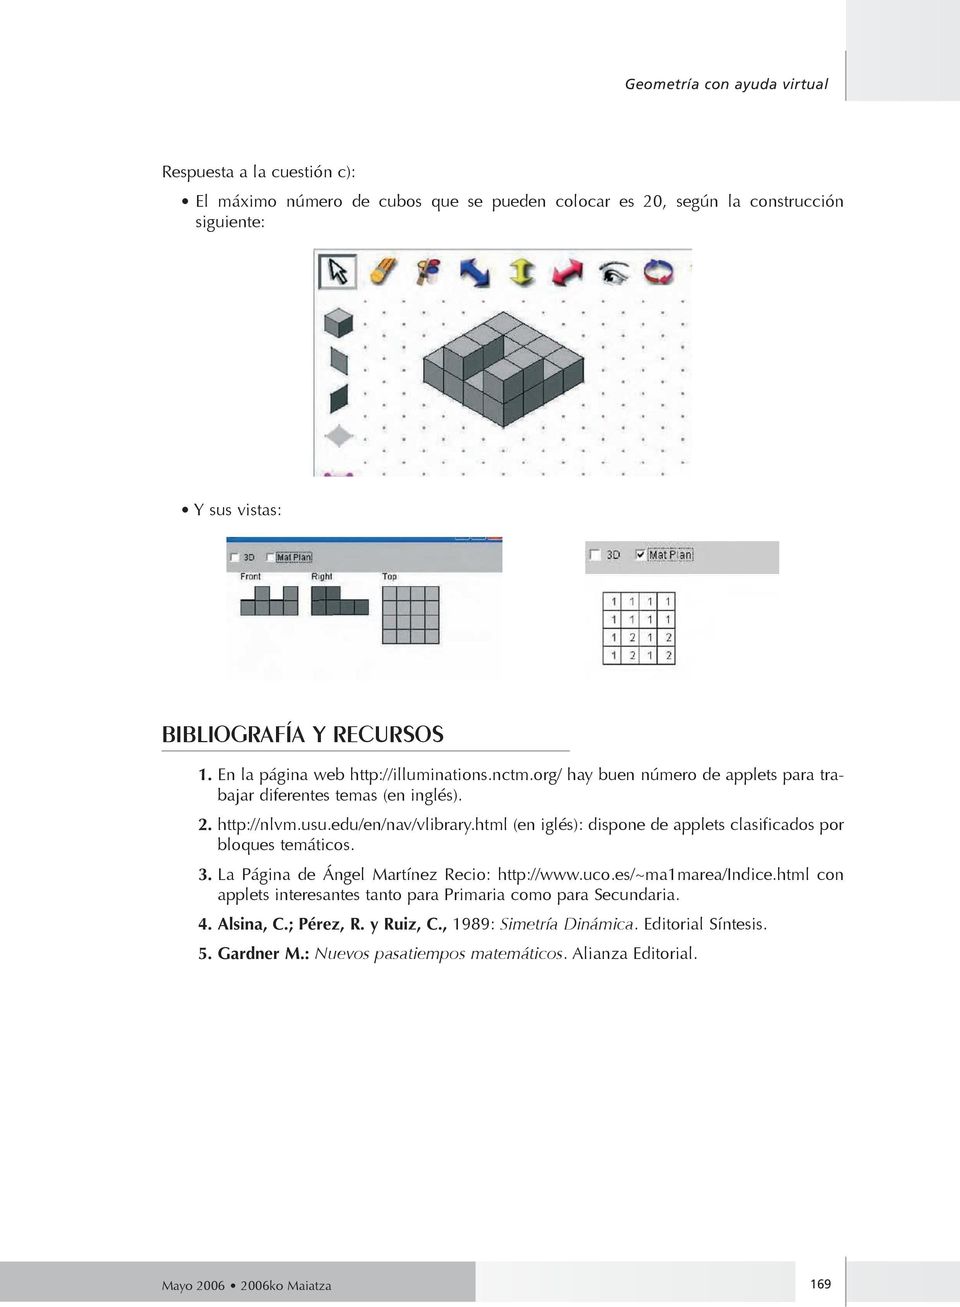 html (en iglés): dispone de applets clasificados por bloques temáticos. 3. La Página de Ángel Martínez Recio: http://www.uco.es/~ma1marea/indice.